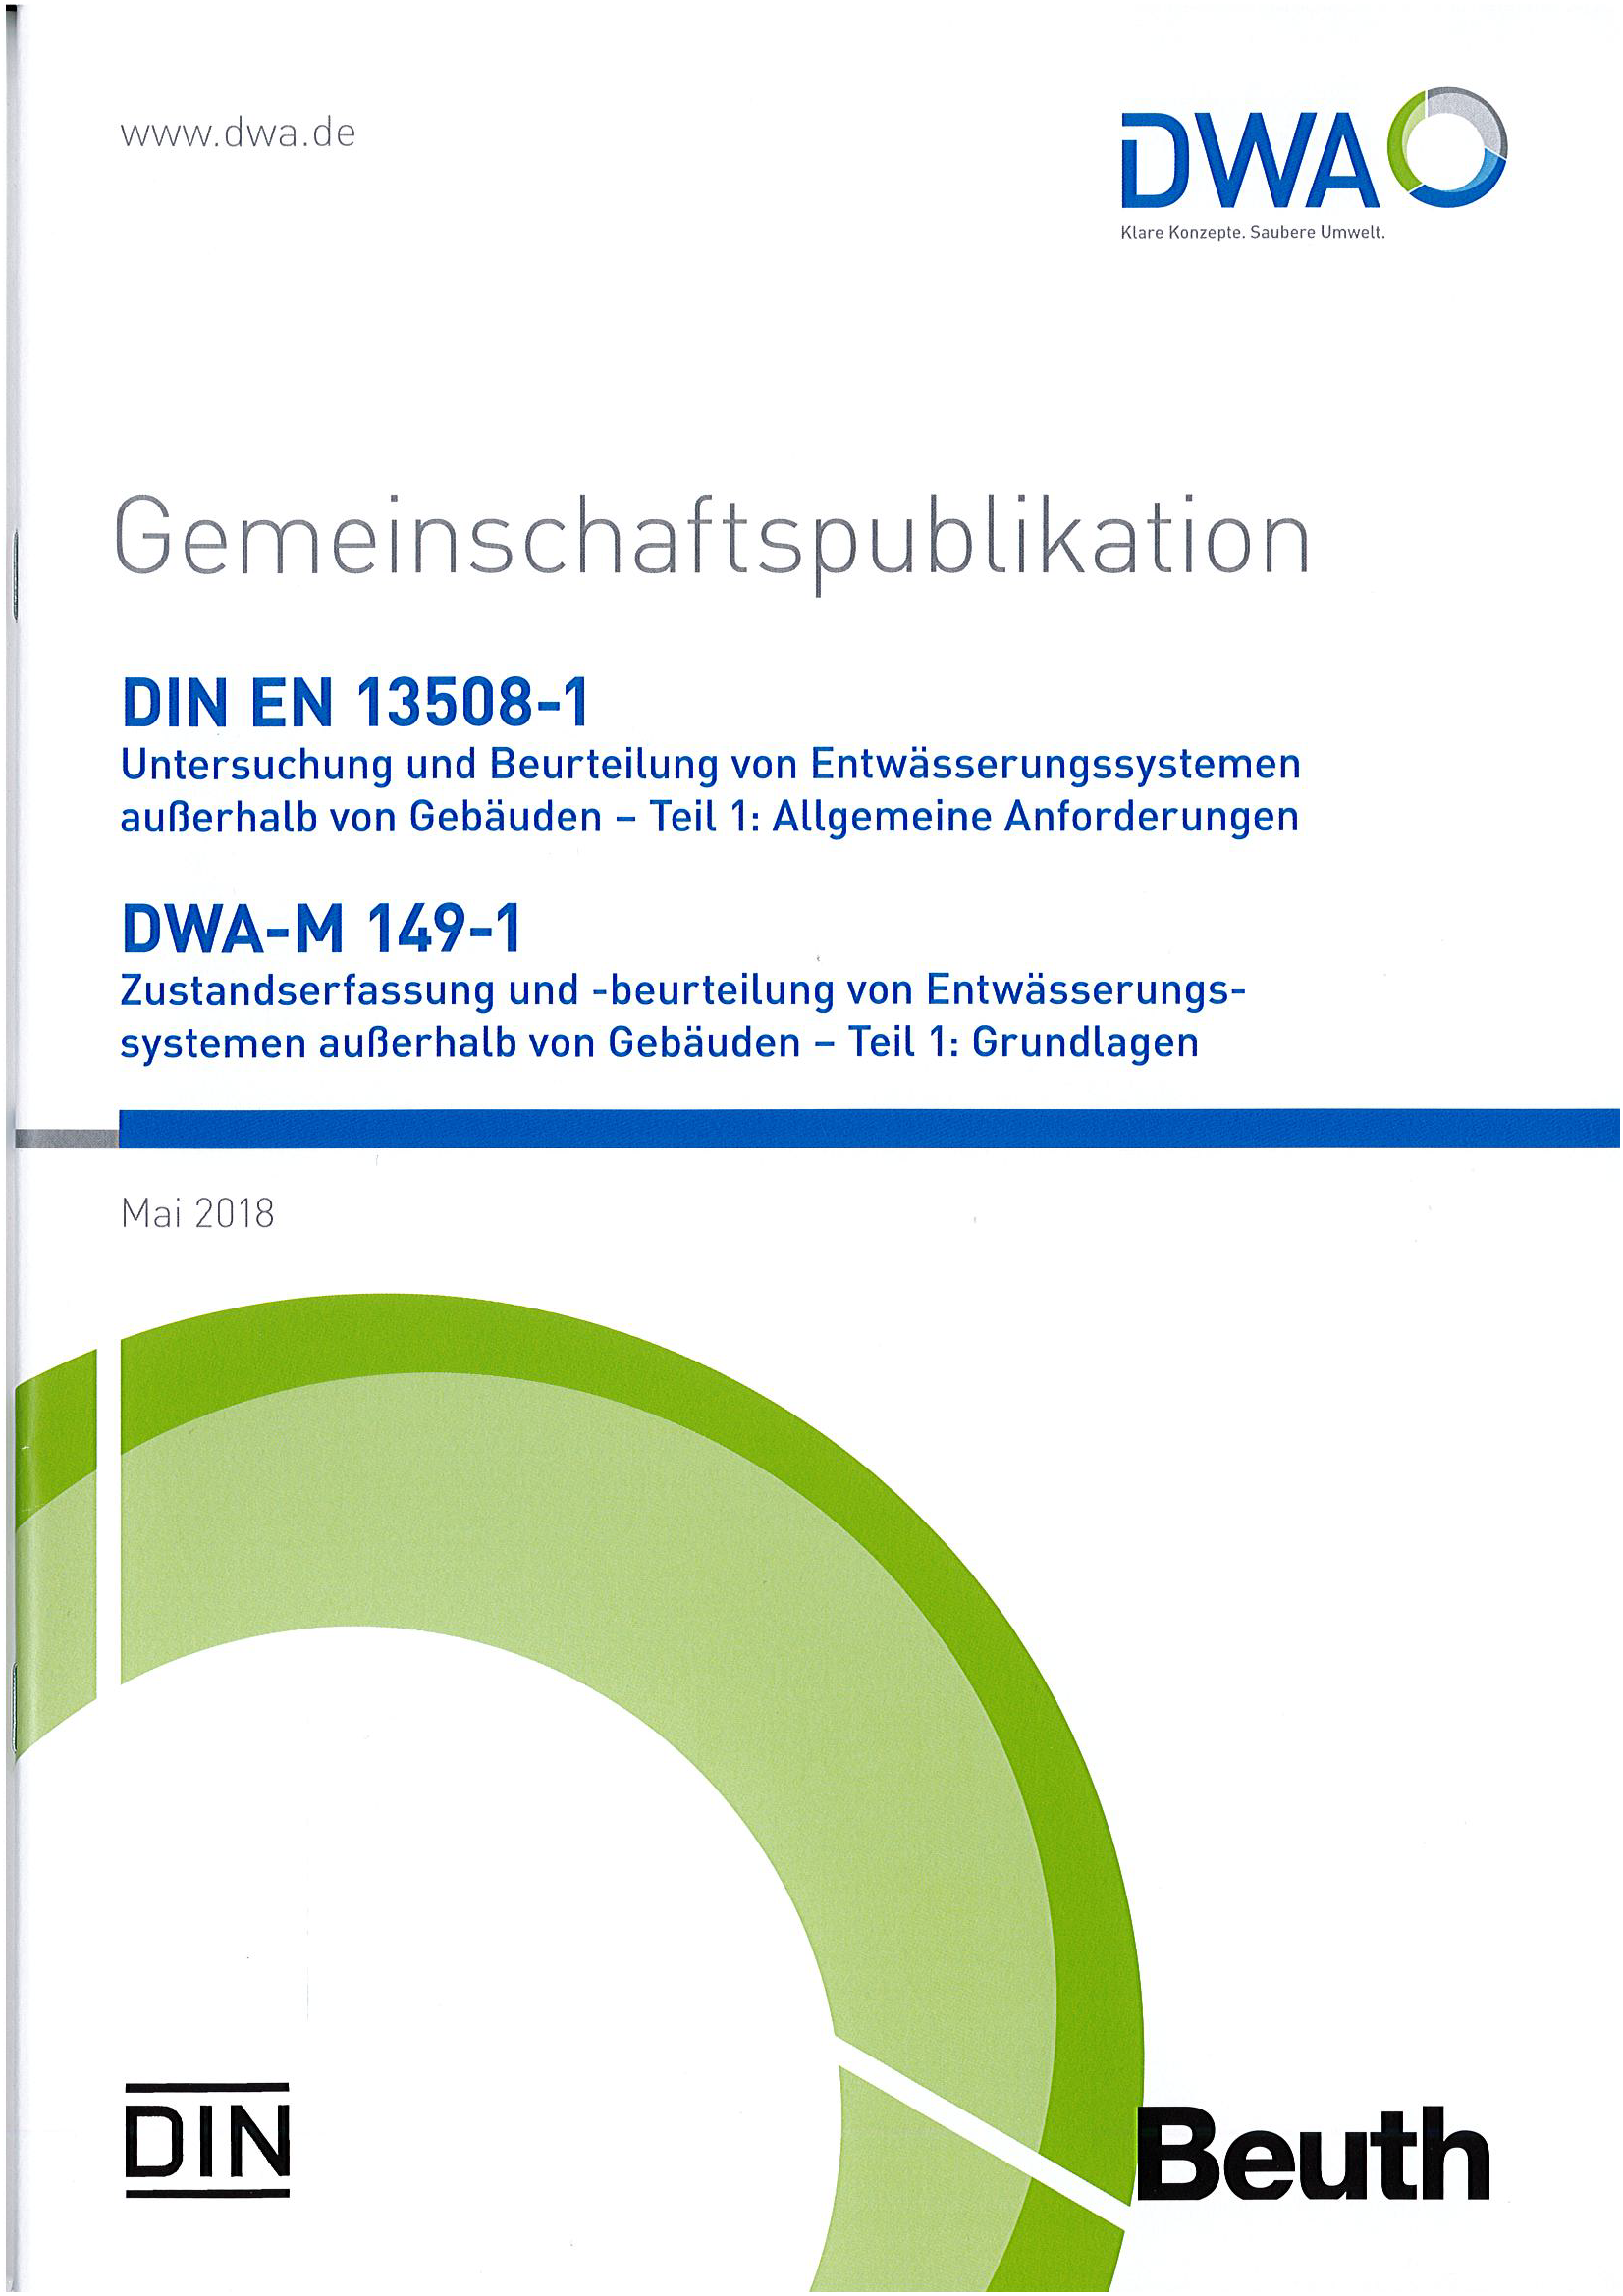 Gemeinschaftspublikation DIN EN 13508-1/DWA-M 149-1 - Untersuchung und Beurteilung von Entwässerungssystemen außerhalb von Gebäuden - Teil 1: Allgemeine Anforderungen